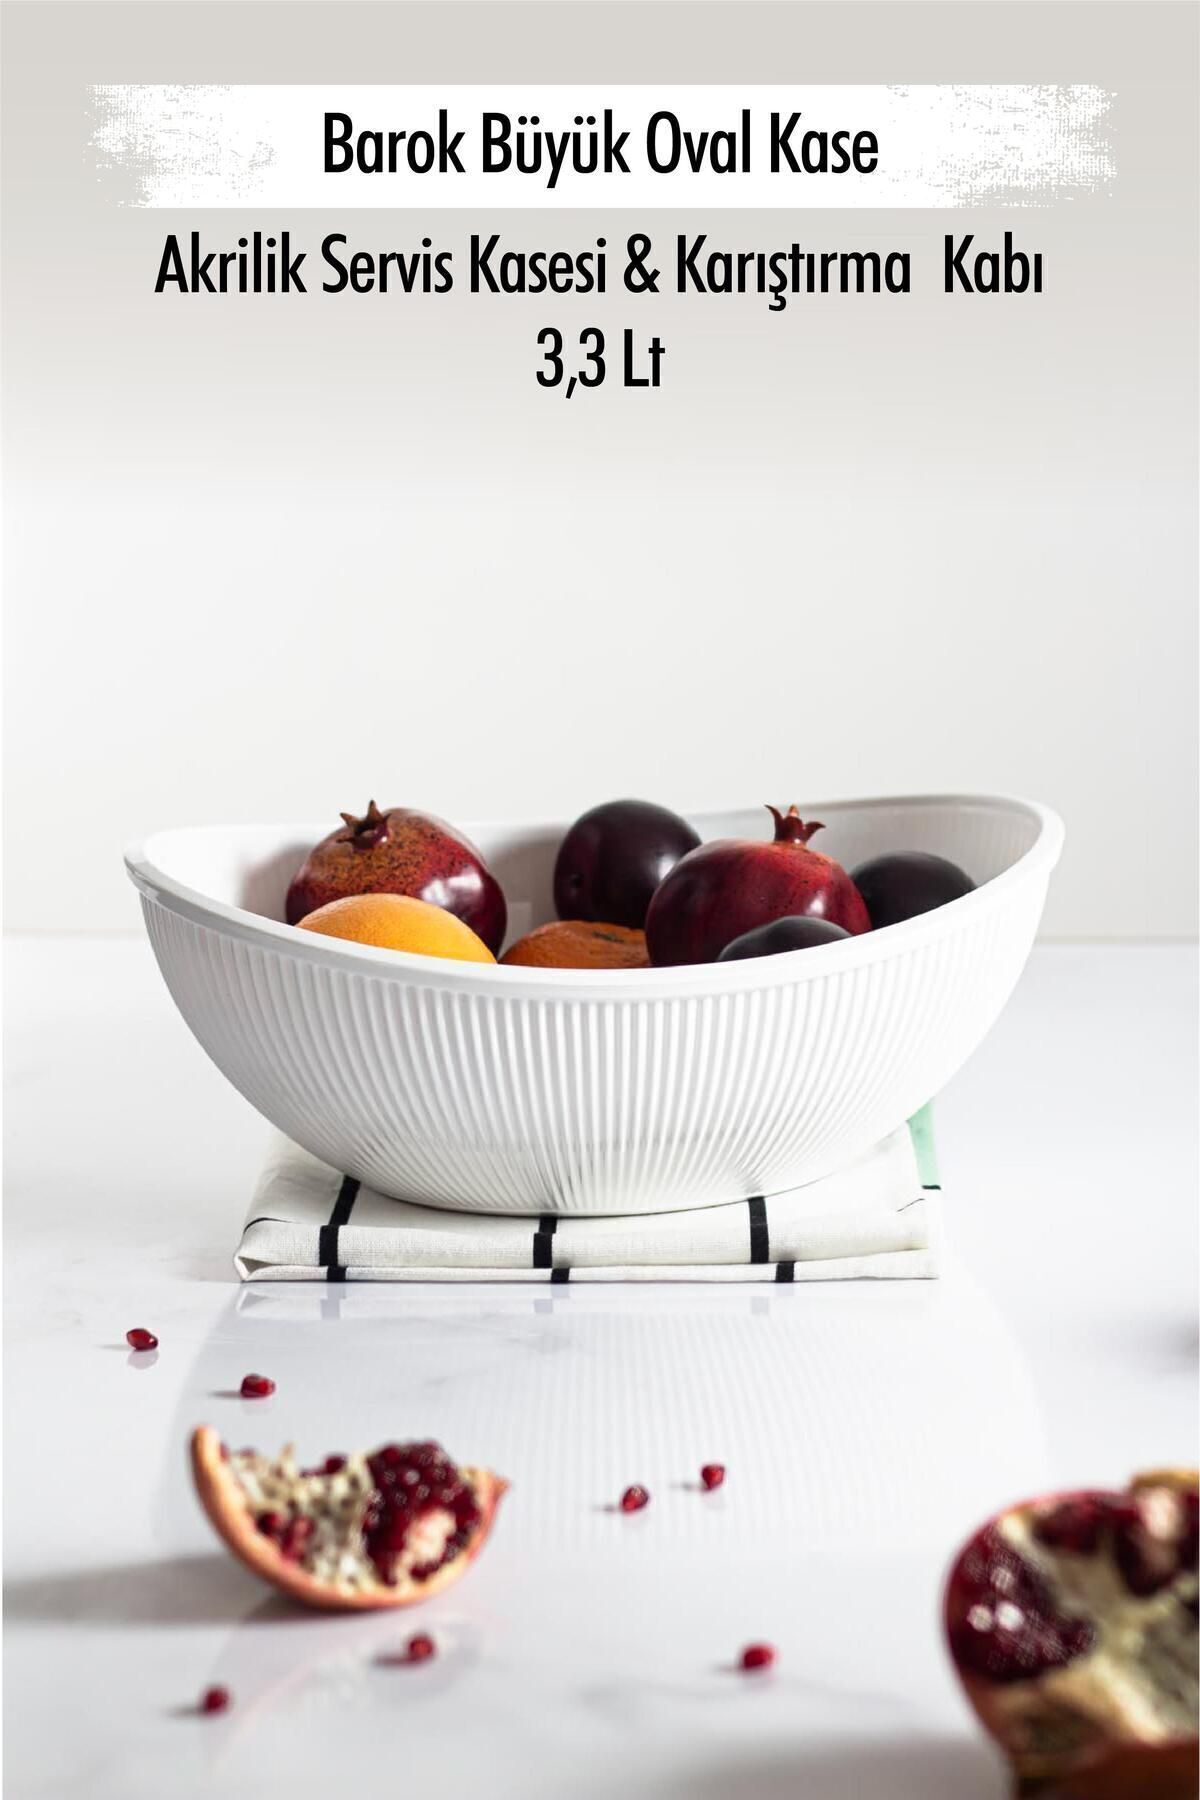 EWs Akrilik Barok Beyaz Büyük Oval Meyve & Salata Kasesi & Karıştırma Kabı / 3,3 Lt  (CAM DEĞİLDİR)